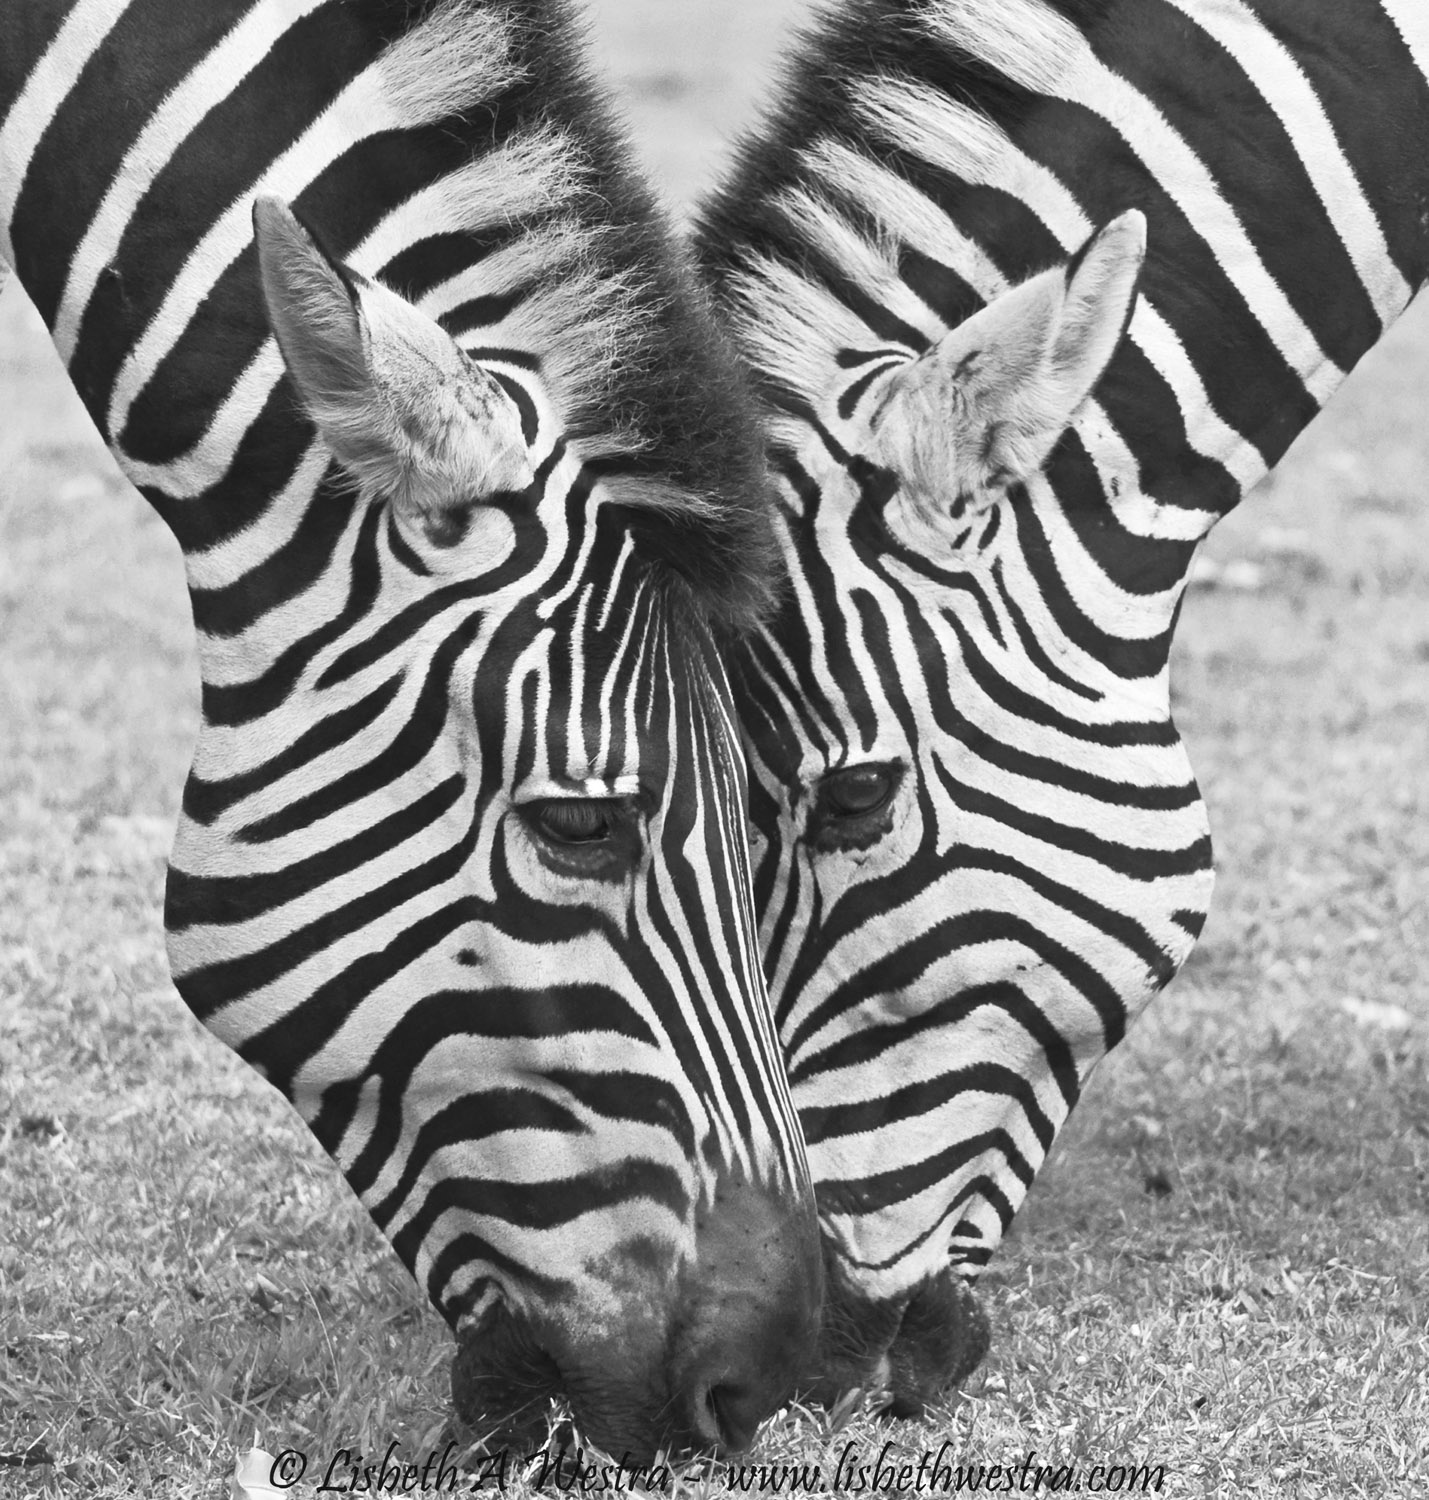 Two Zebras